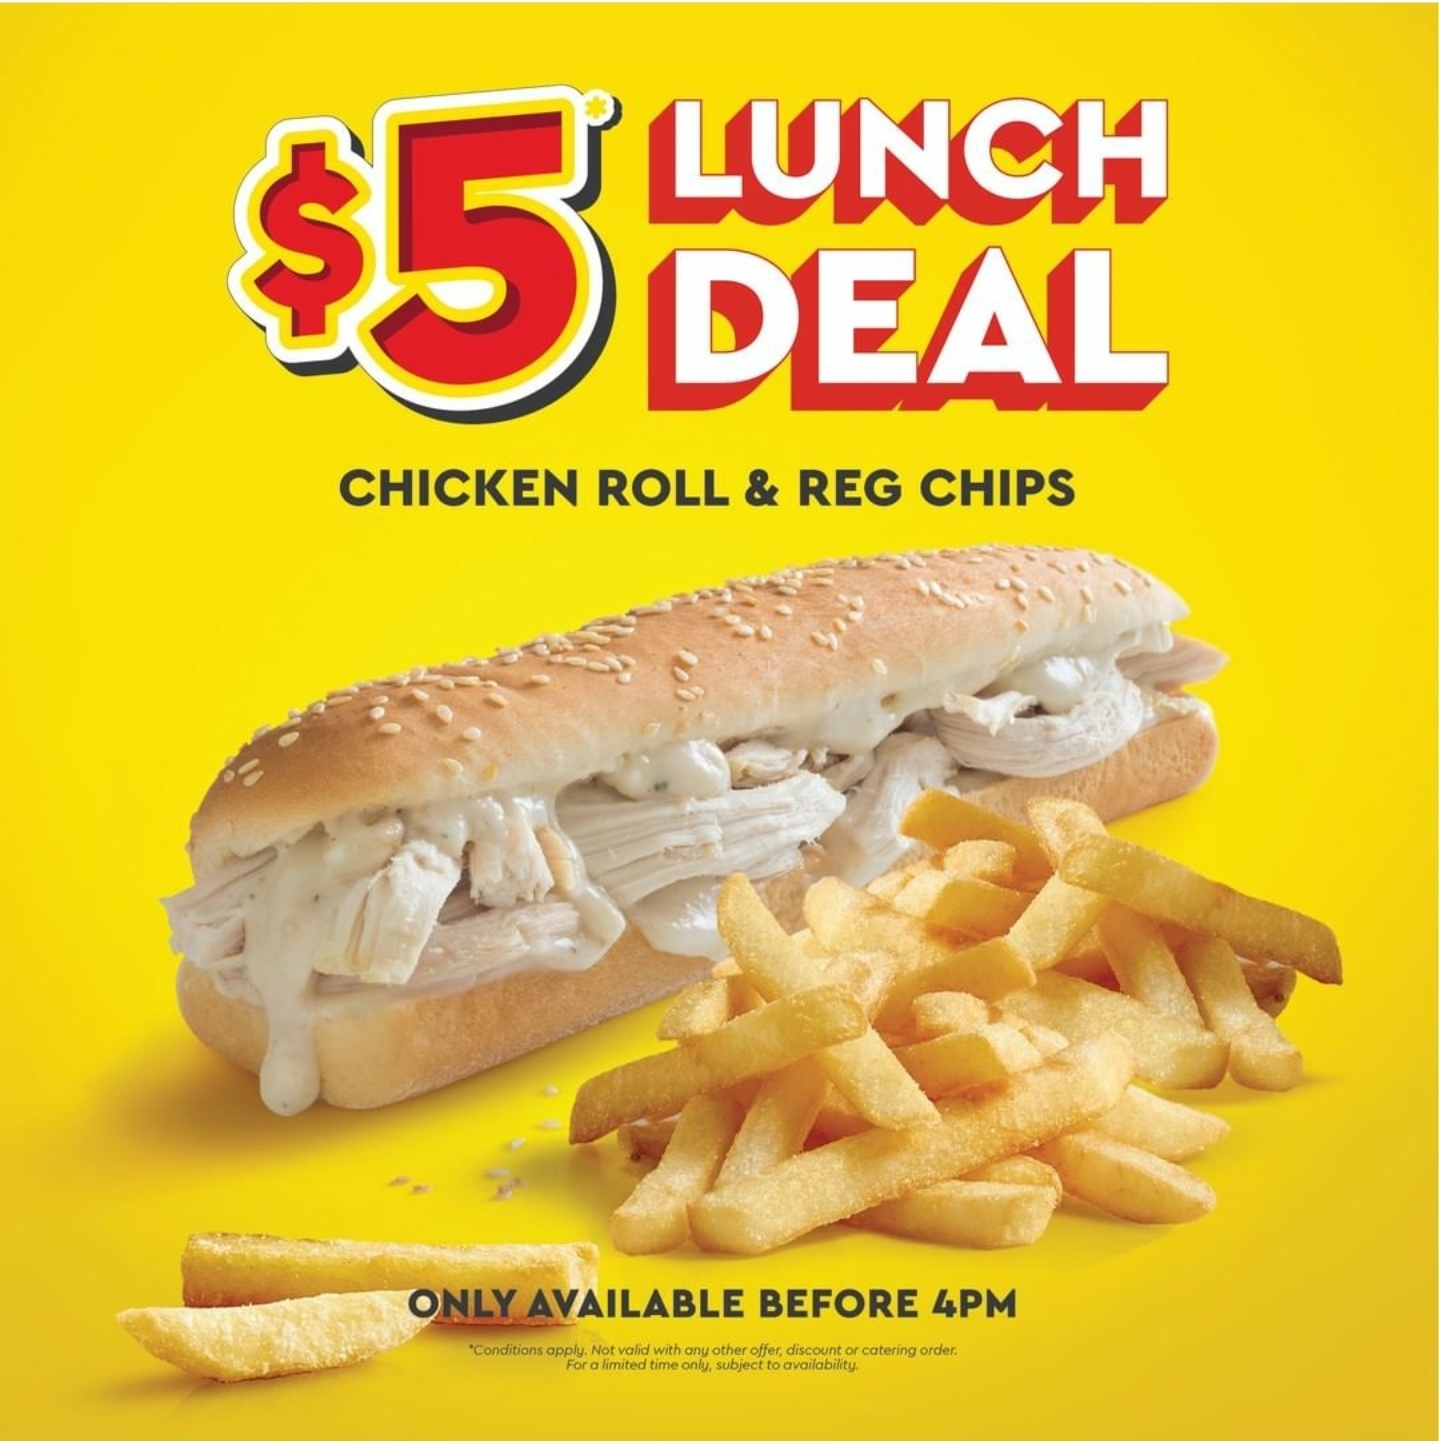 DEAL: Chicken Treat - $5 Chicken Roll & Regular Chips until 4pm 1